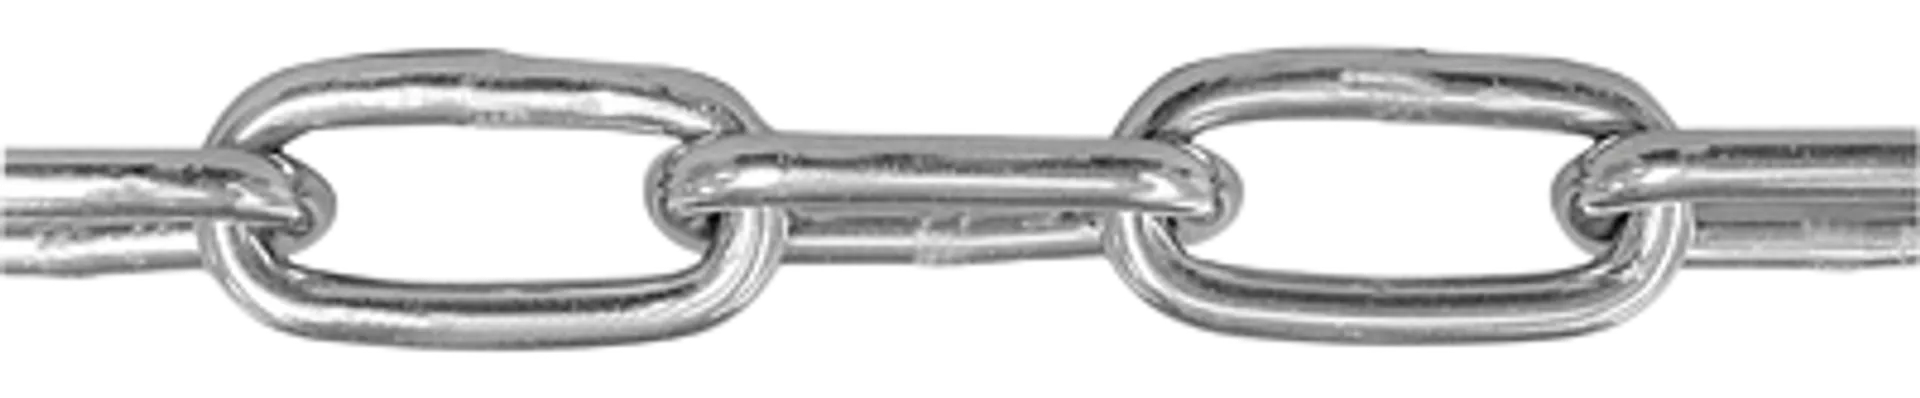 Pitkälenkkikettinki A4 8 mm